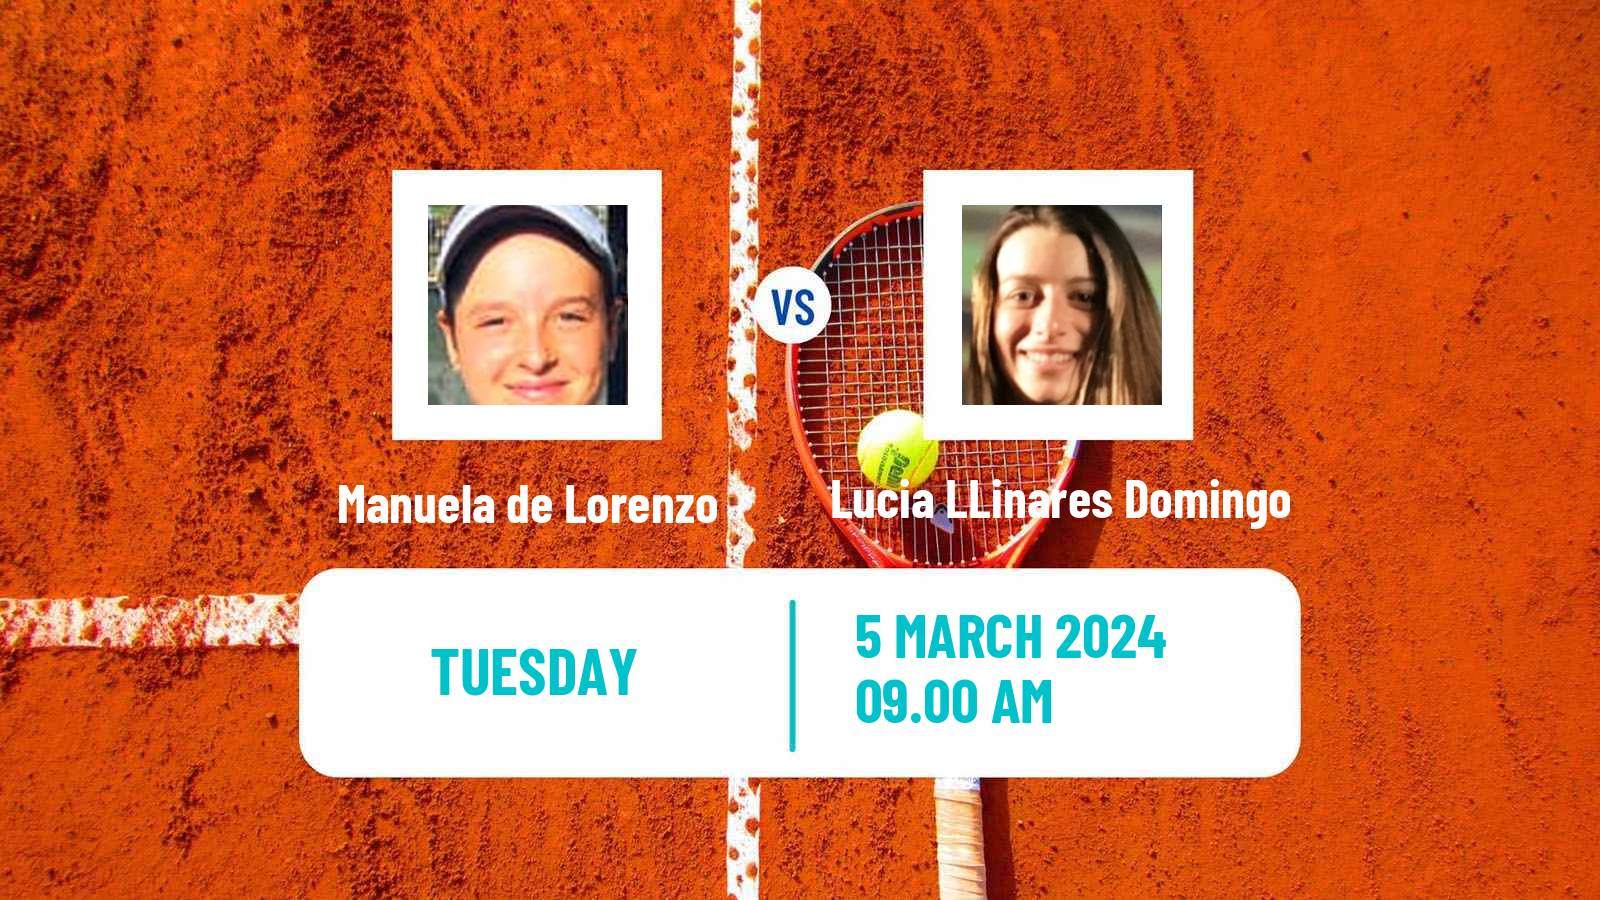 Tennis ITF W15 Monastir 8 Women Manuela de Lorenzo - Lucia LLinares Domingo